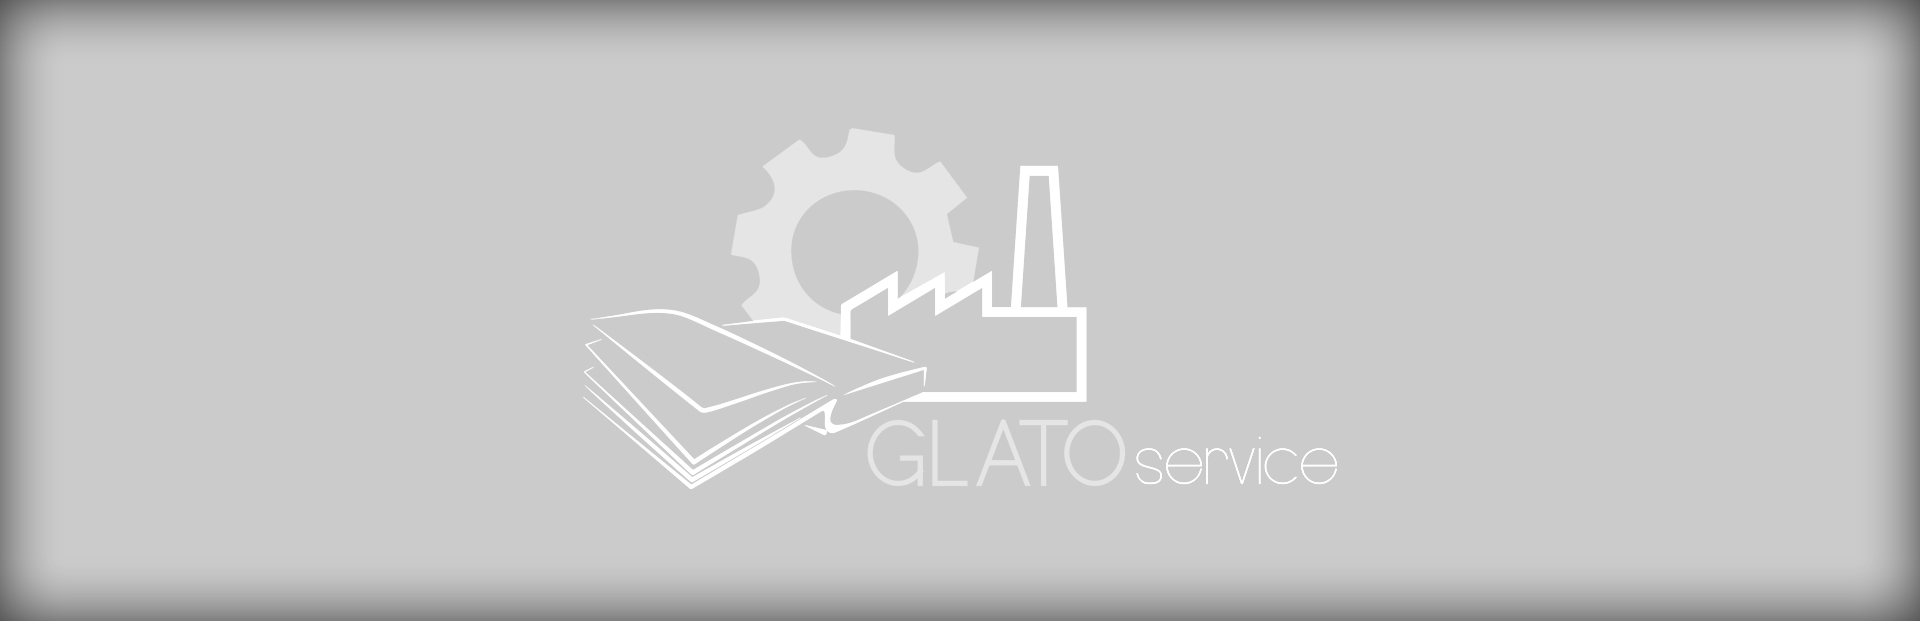 Finitura GLATO-service